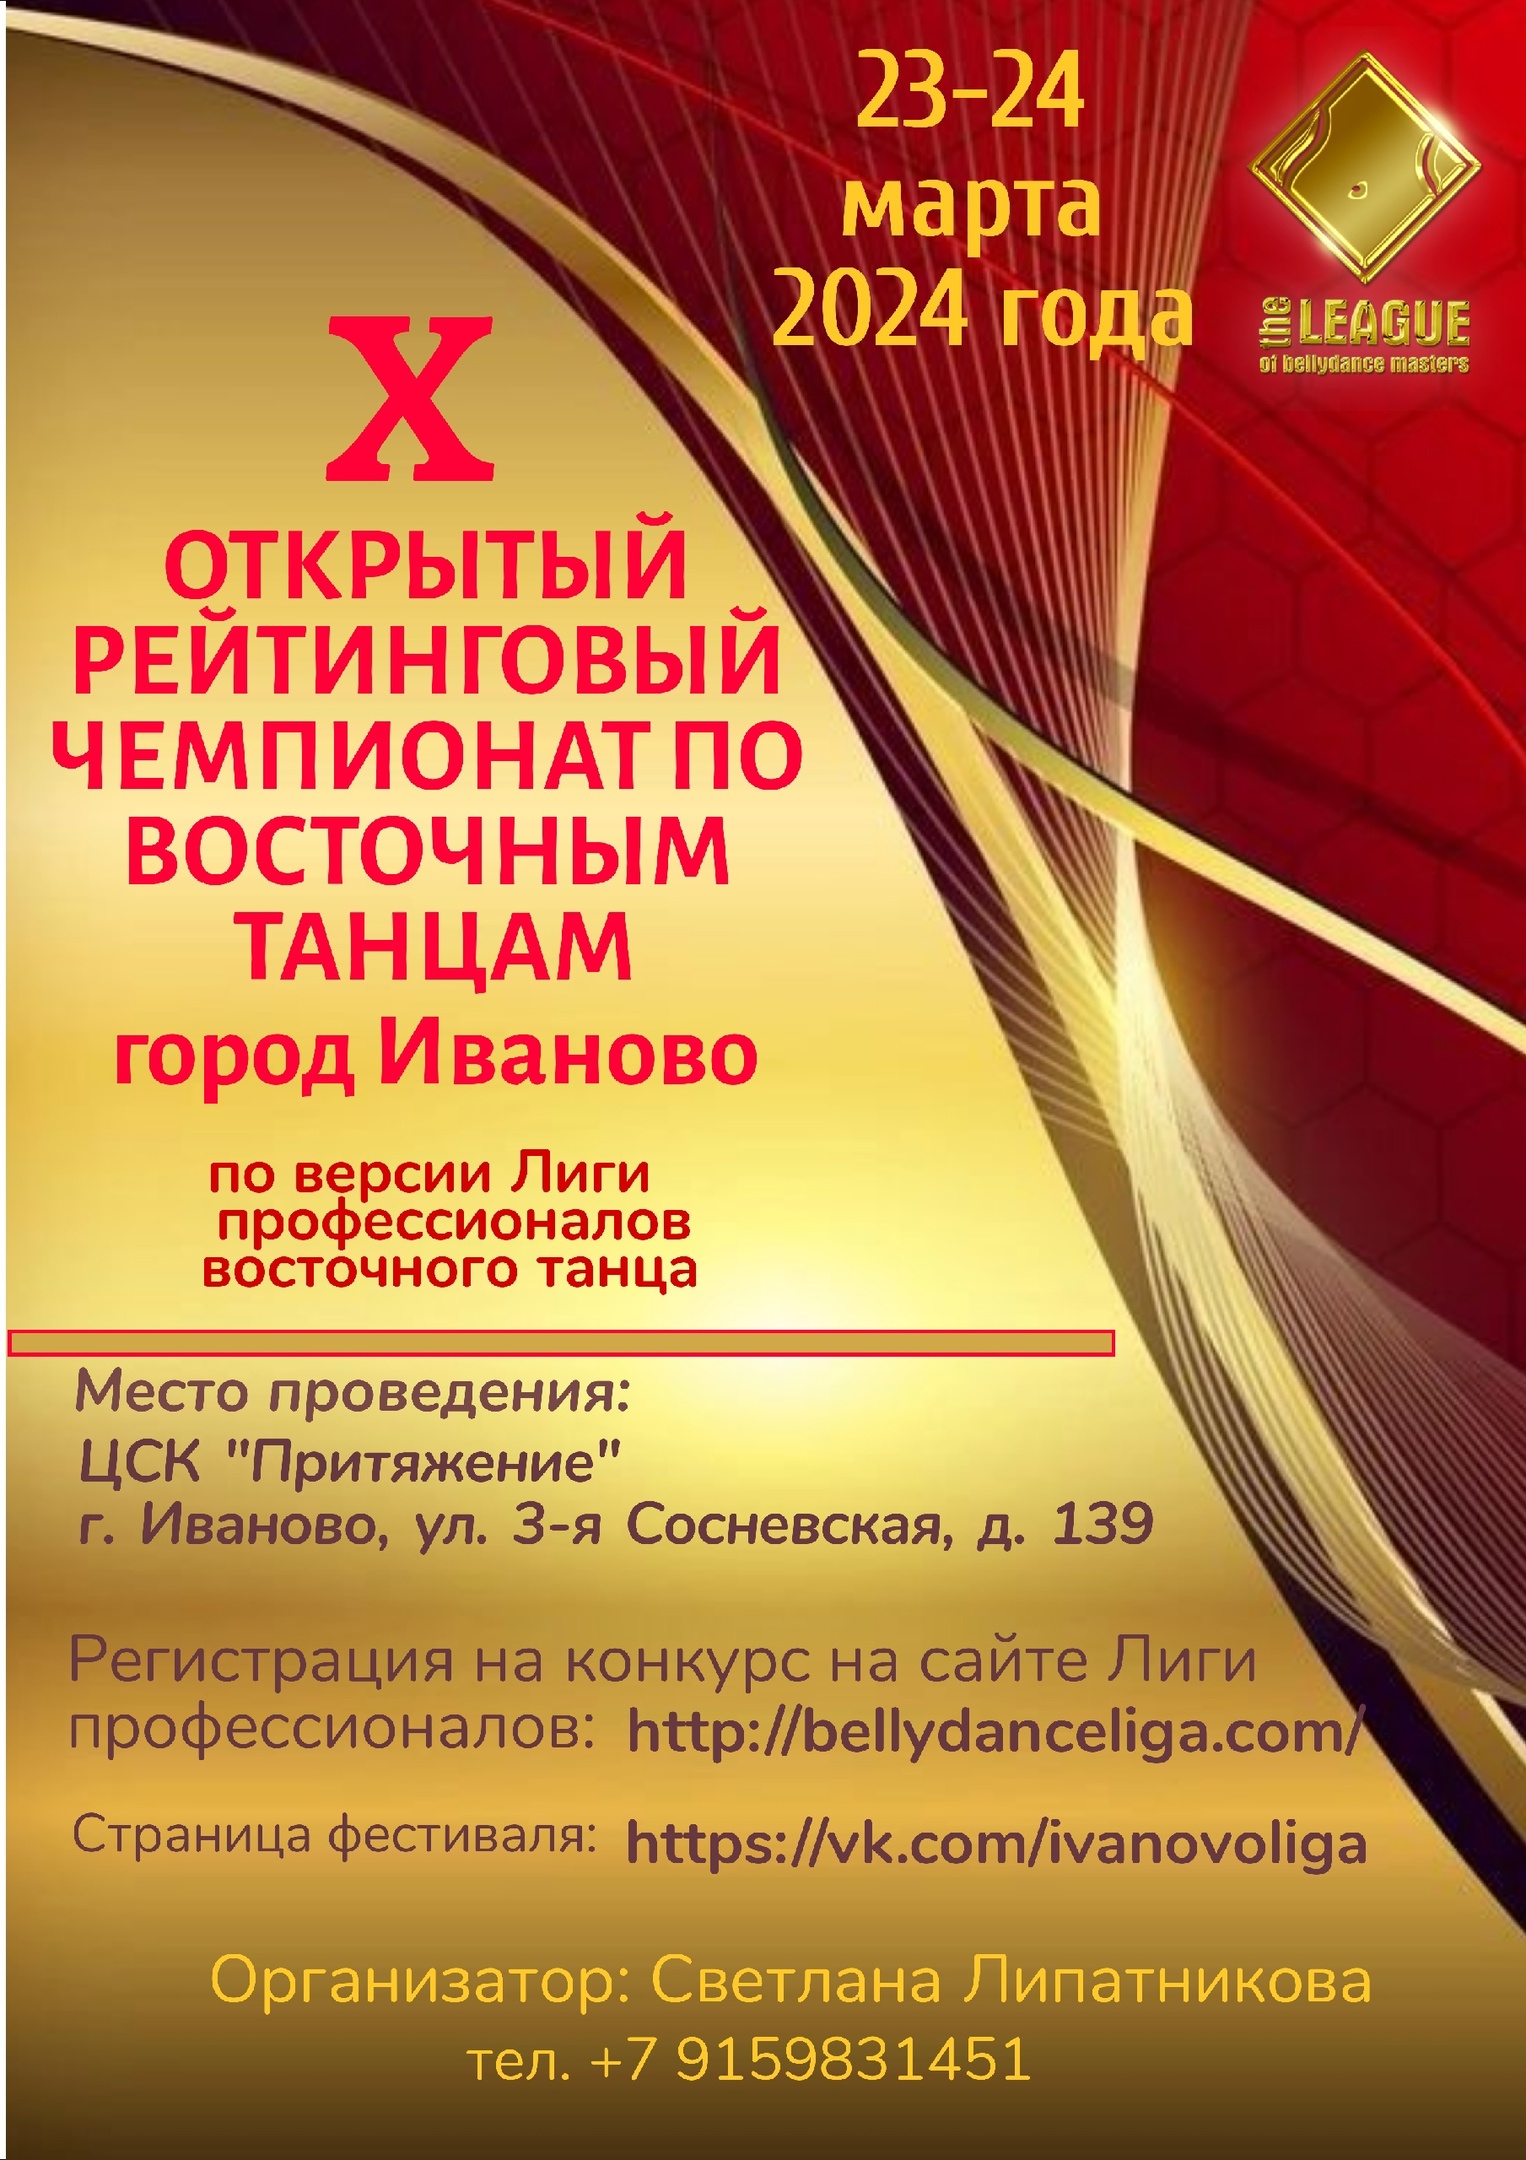 X Открытый Рейтинговый Чемпионат г.Иваново